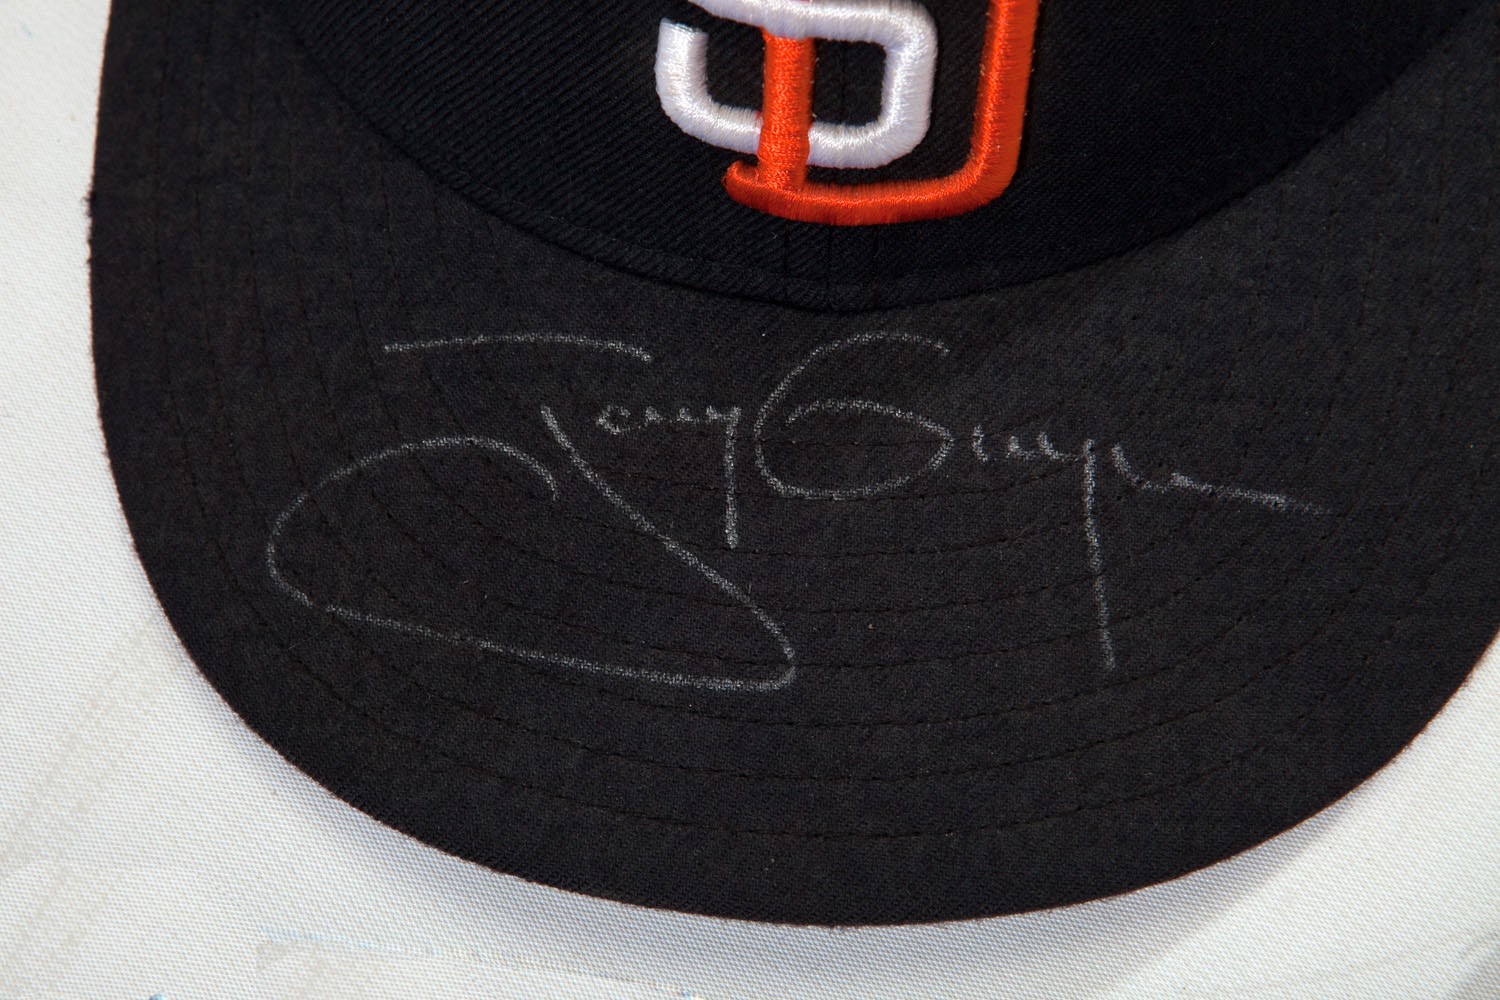 1998 Tony Gwynn Game Worn & Signed San Diego Padres Uniform